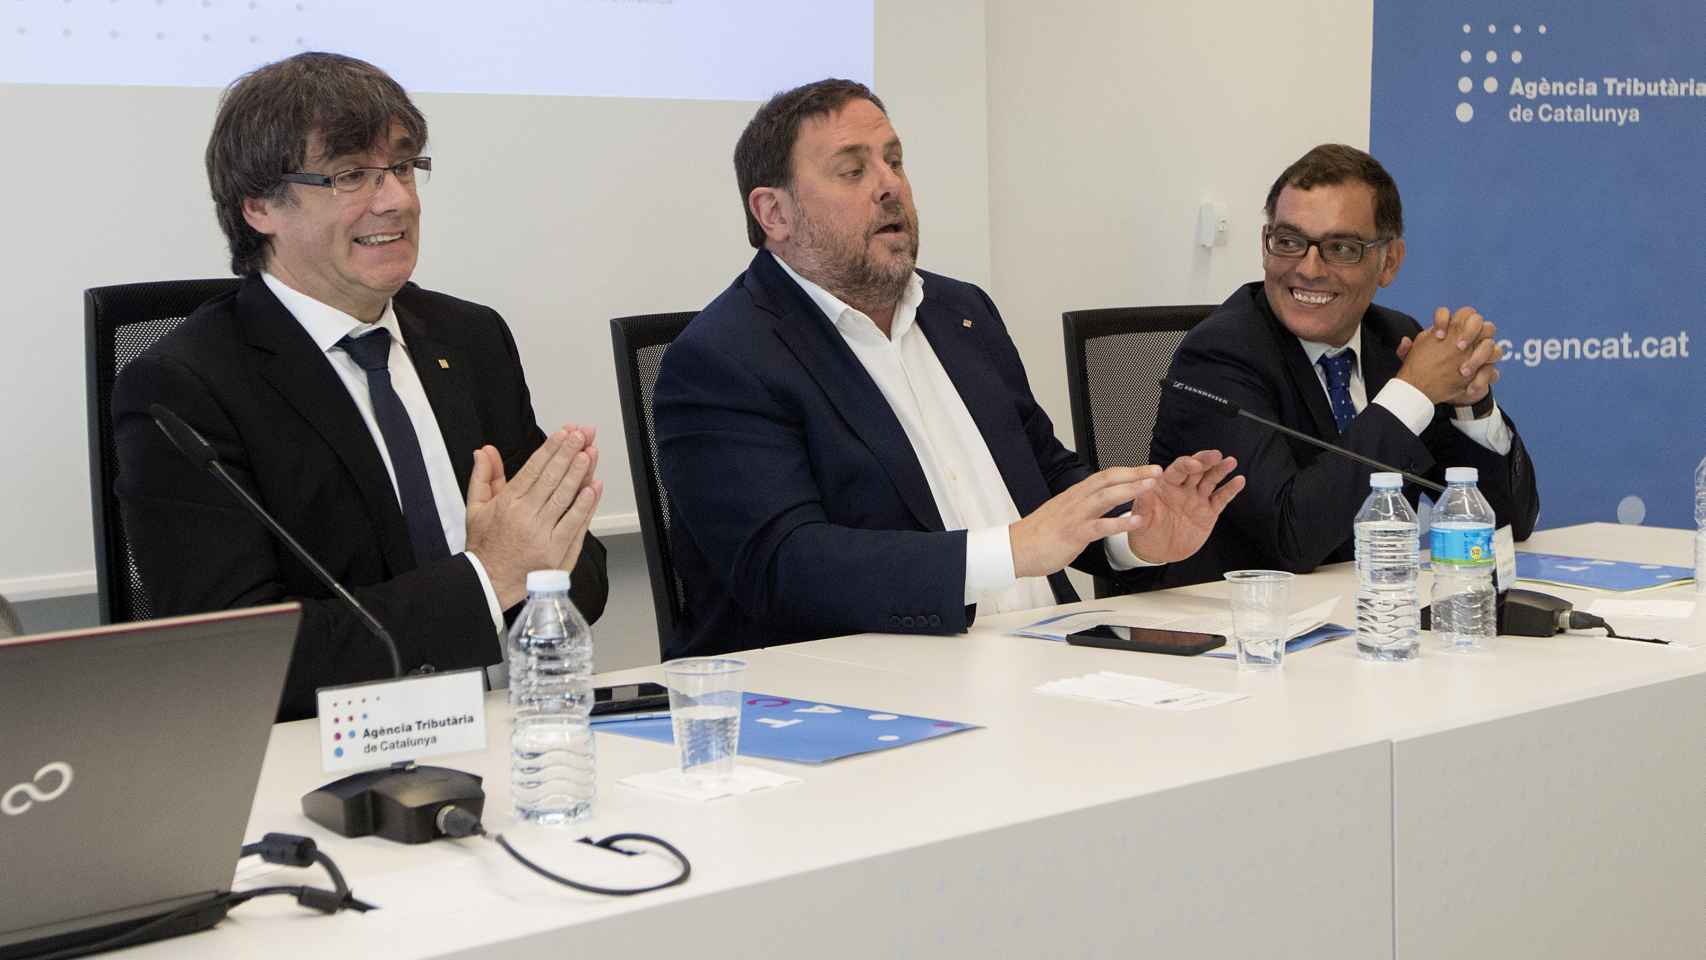 Carles Puigdemont , Oriol Junqueras y Eduard Vilà durante la rueda de prensa del despliegue de la Agencia Tributaria de Cataluña